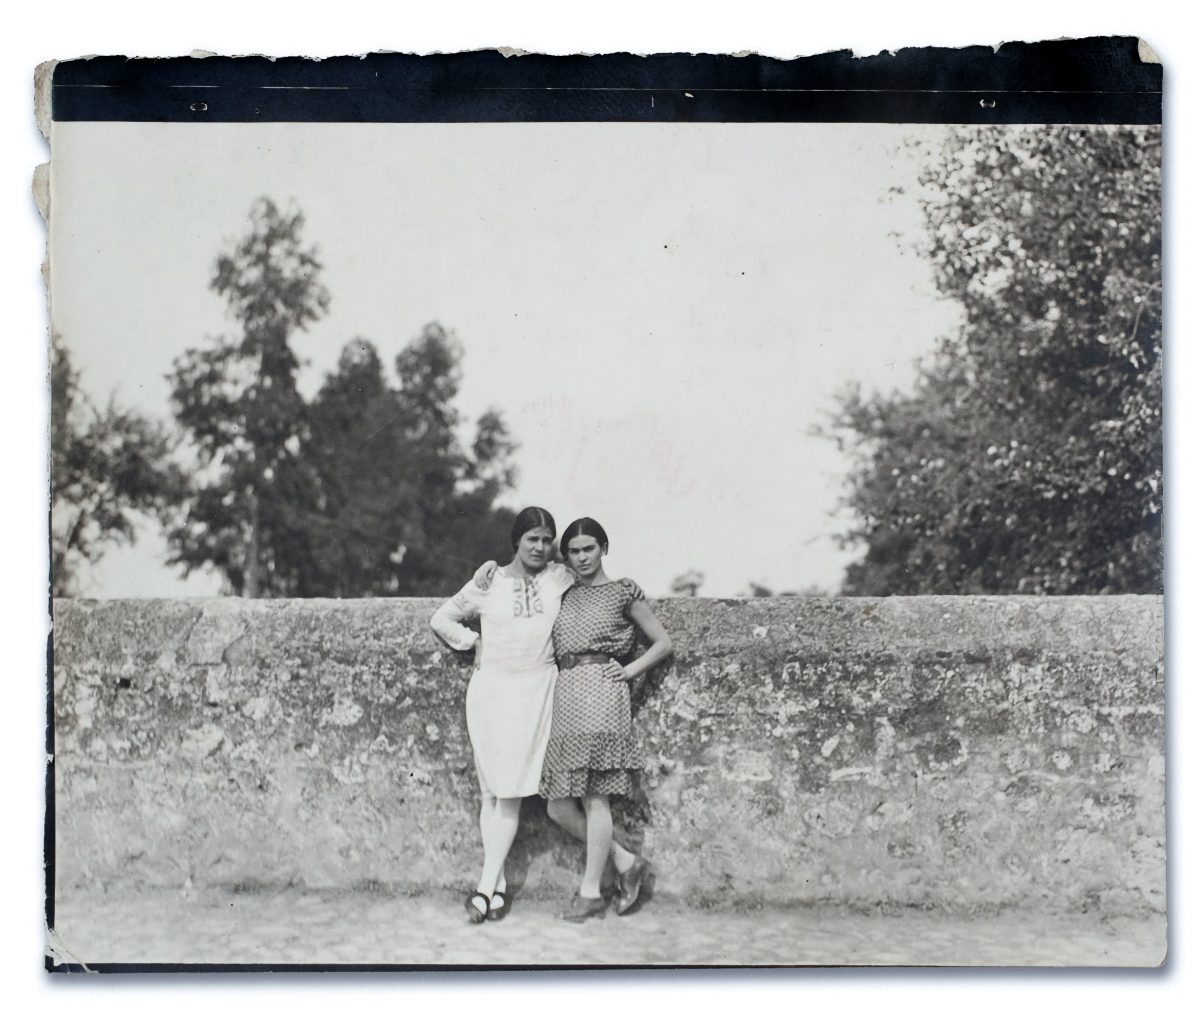 SEM DISTORÇÕES OU MANIPULAÇÕES – FOTOGRAFIA DE TINA MODOTTI Artes & contextos Tina Modotti e Frida Kahlo 1928 2